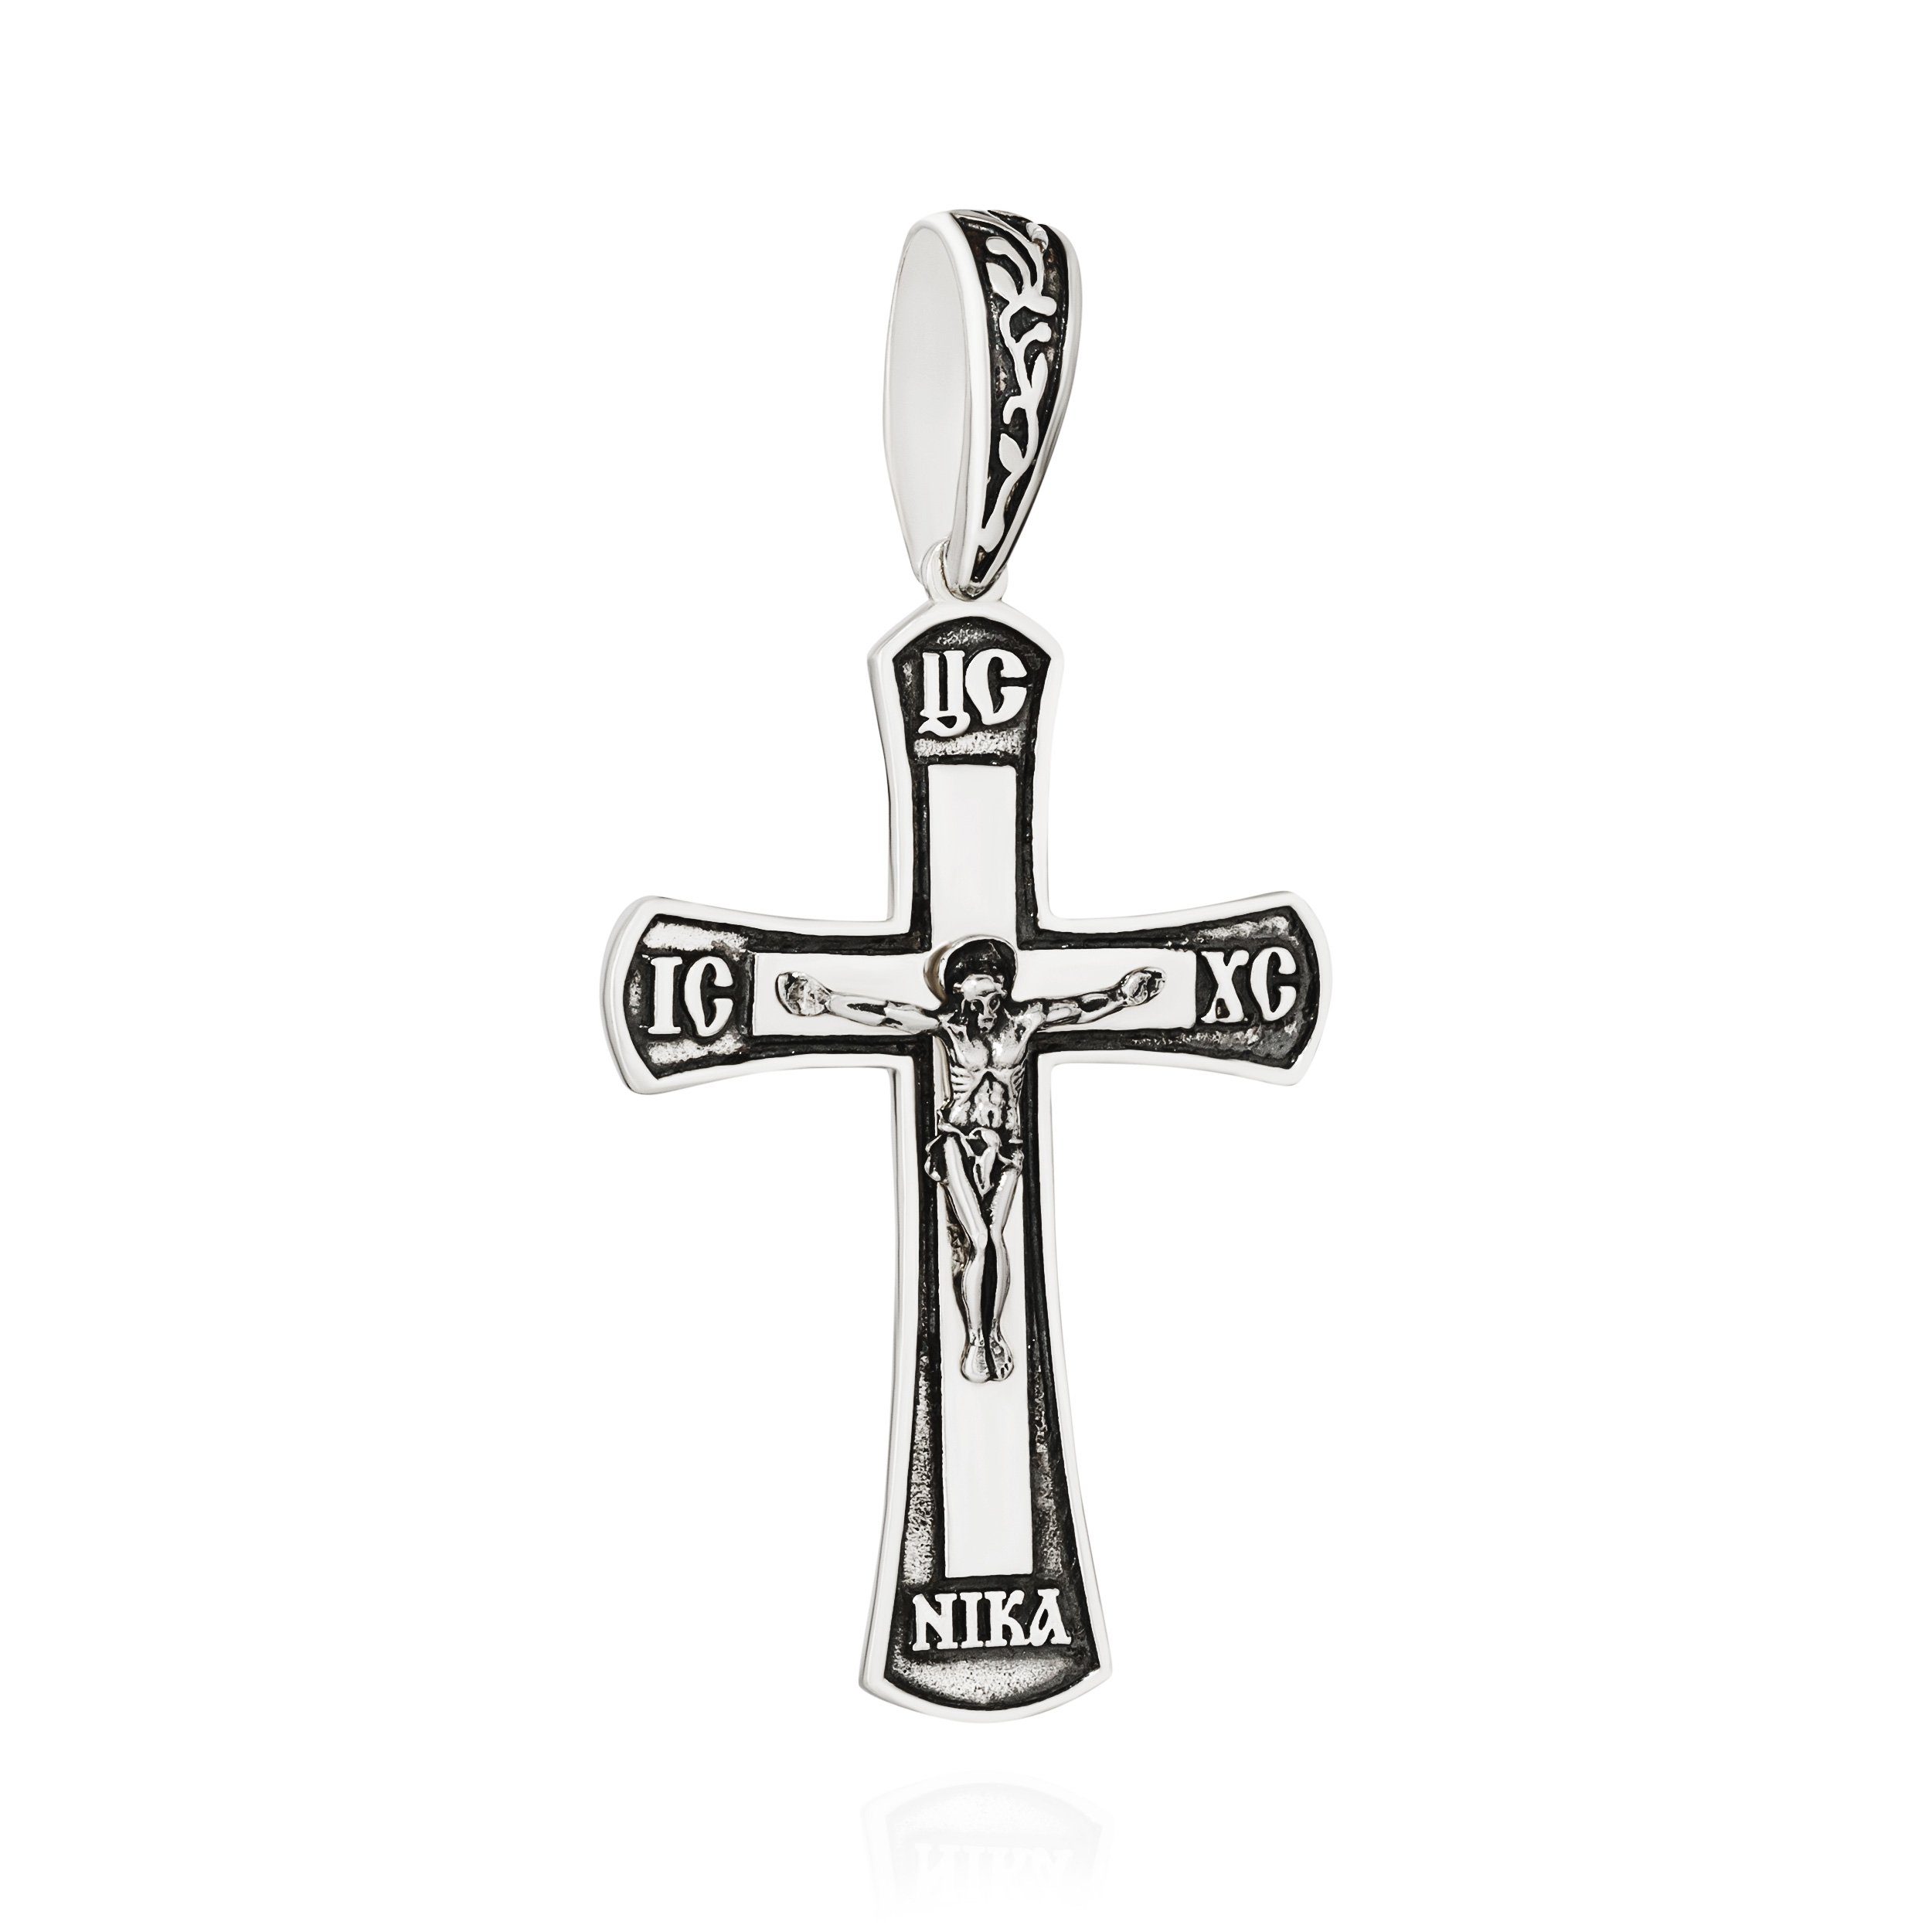 NKlaus Kettenanhänger 925 Silber Kreuzanhänger 37,7mm x 26,3mm Kruzifix Jesus Christus Kette